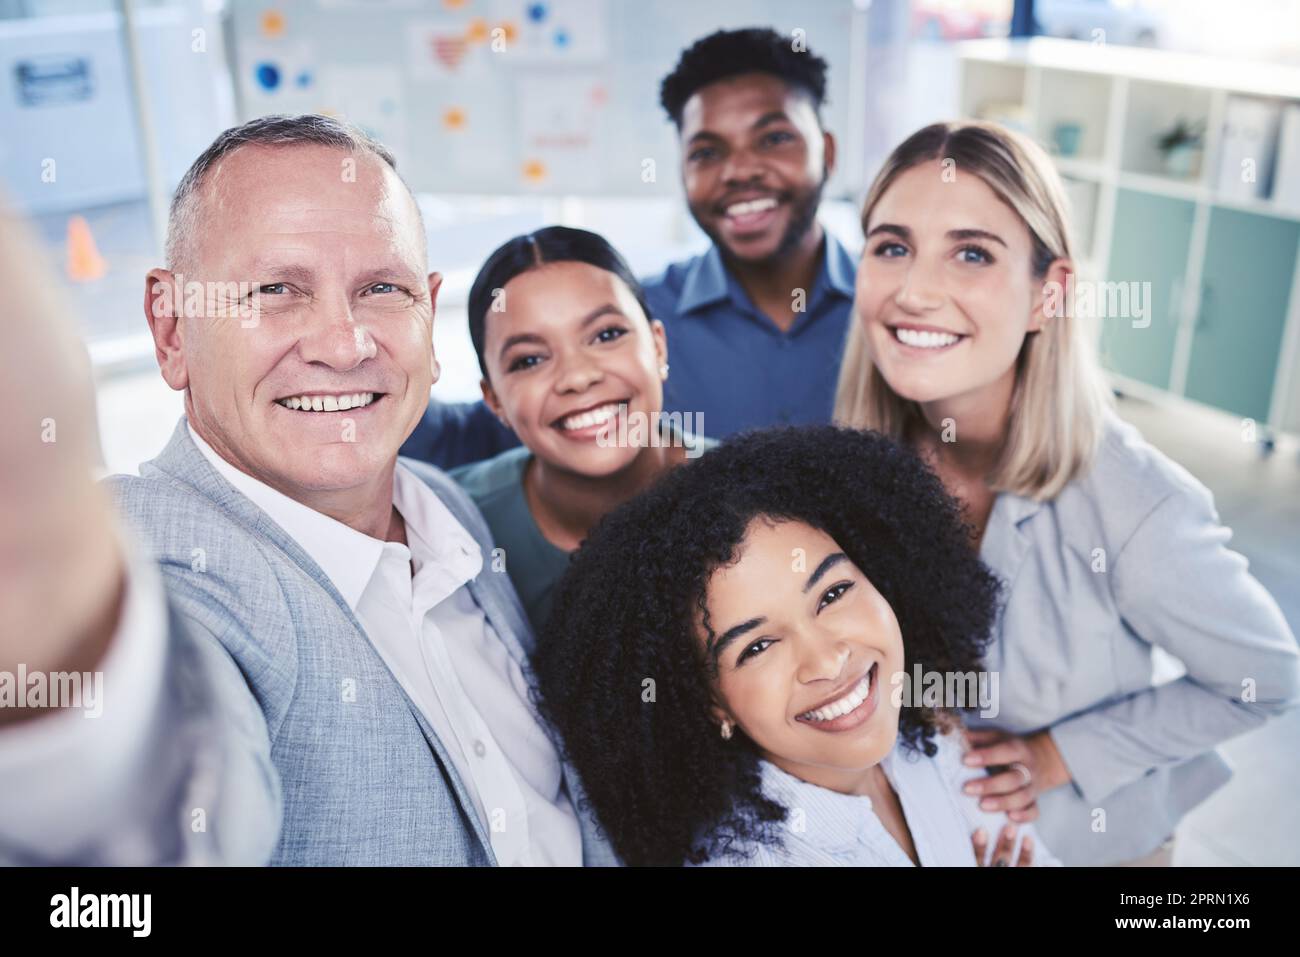 Diversité, selfie et équipe de bureau amis ensemble dans le lieu de travail posent pour une photographie amicale. L'unité, le bonheur et la confiance du personnel multiracial dans la relation d'entreprise d'entreprise. Banque D'Images